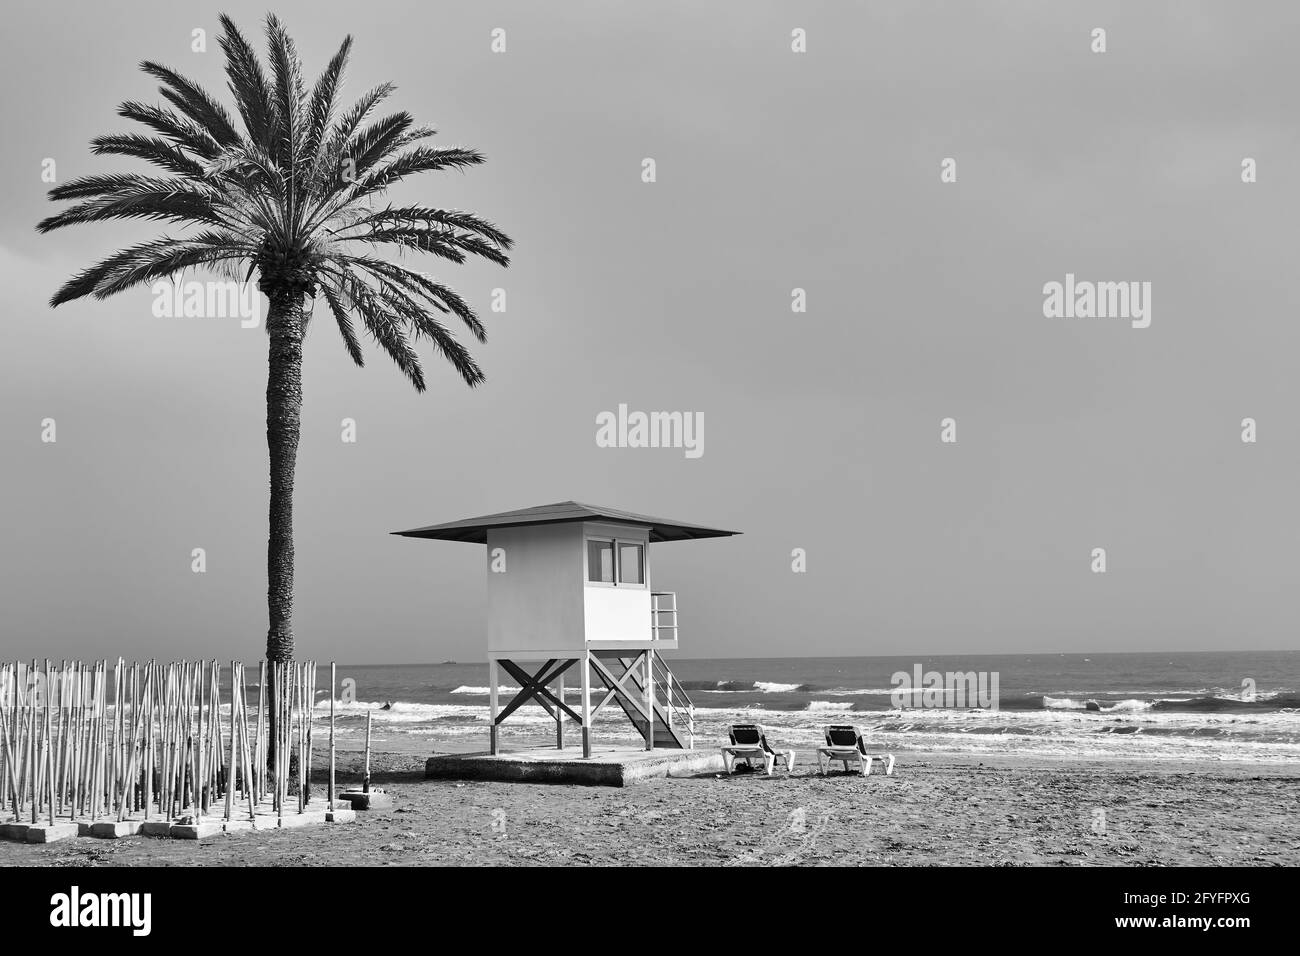 Strand mit Palmen und Rettungsschwimmer Turm am Meer in Nebensaison - Schwarz-Weiß-Fotografie Stockfoto